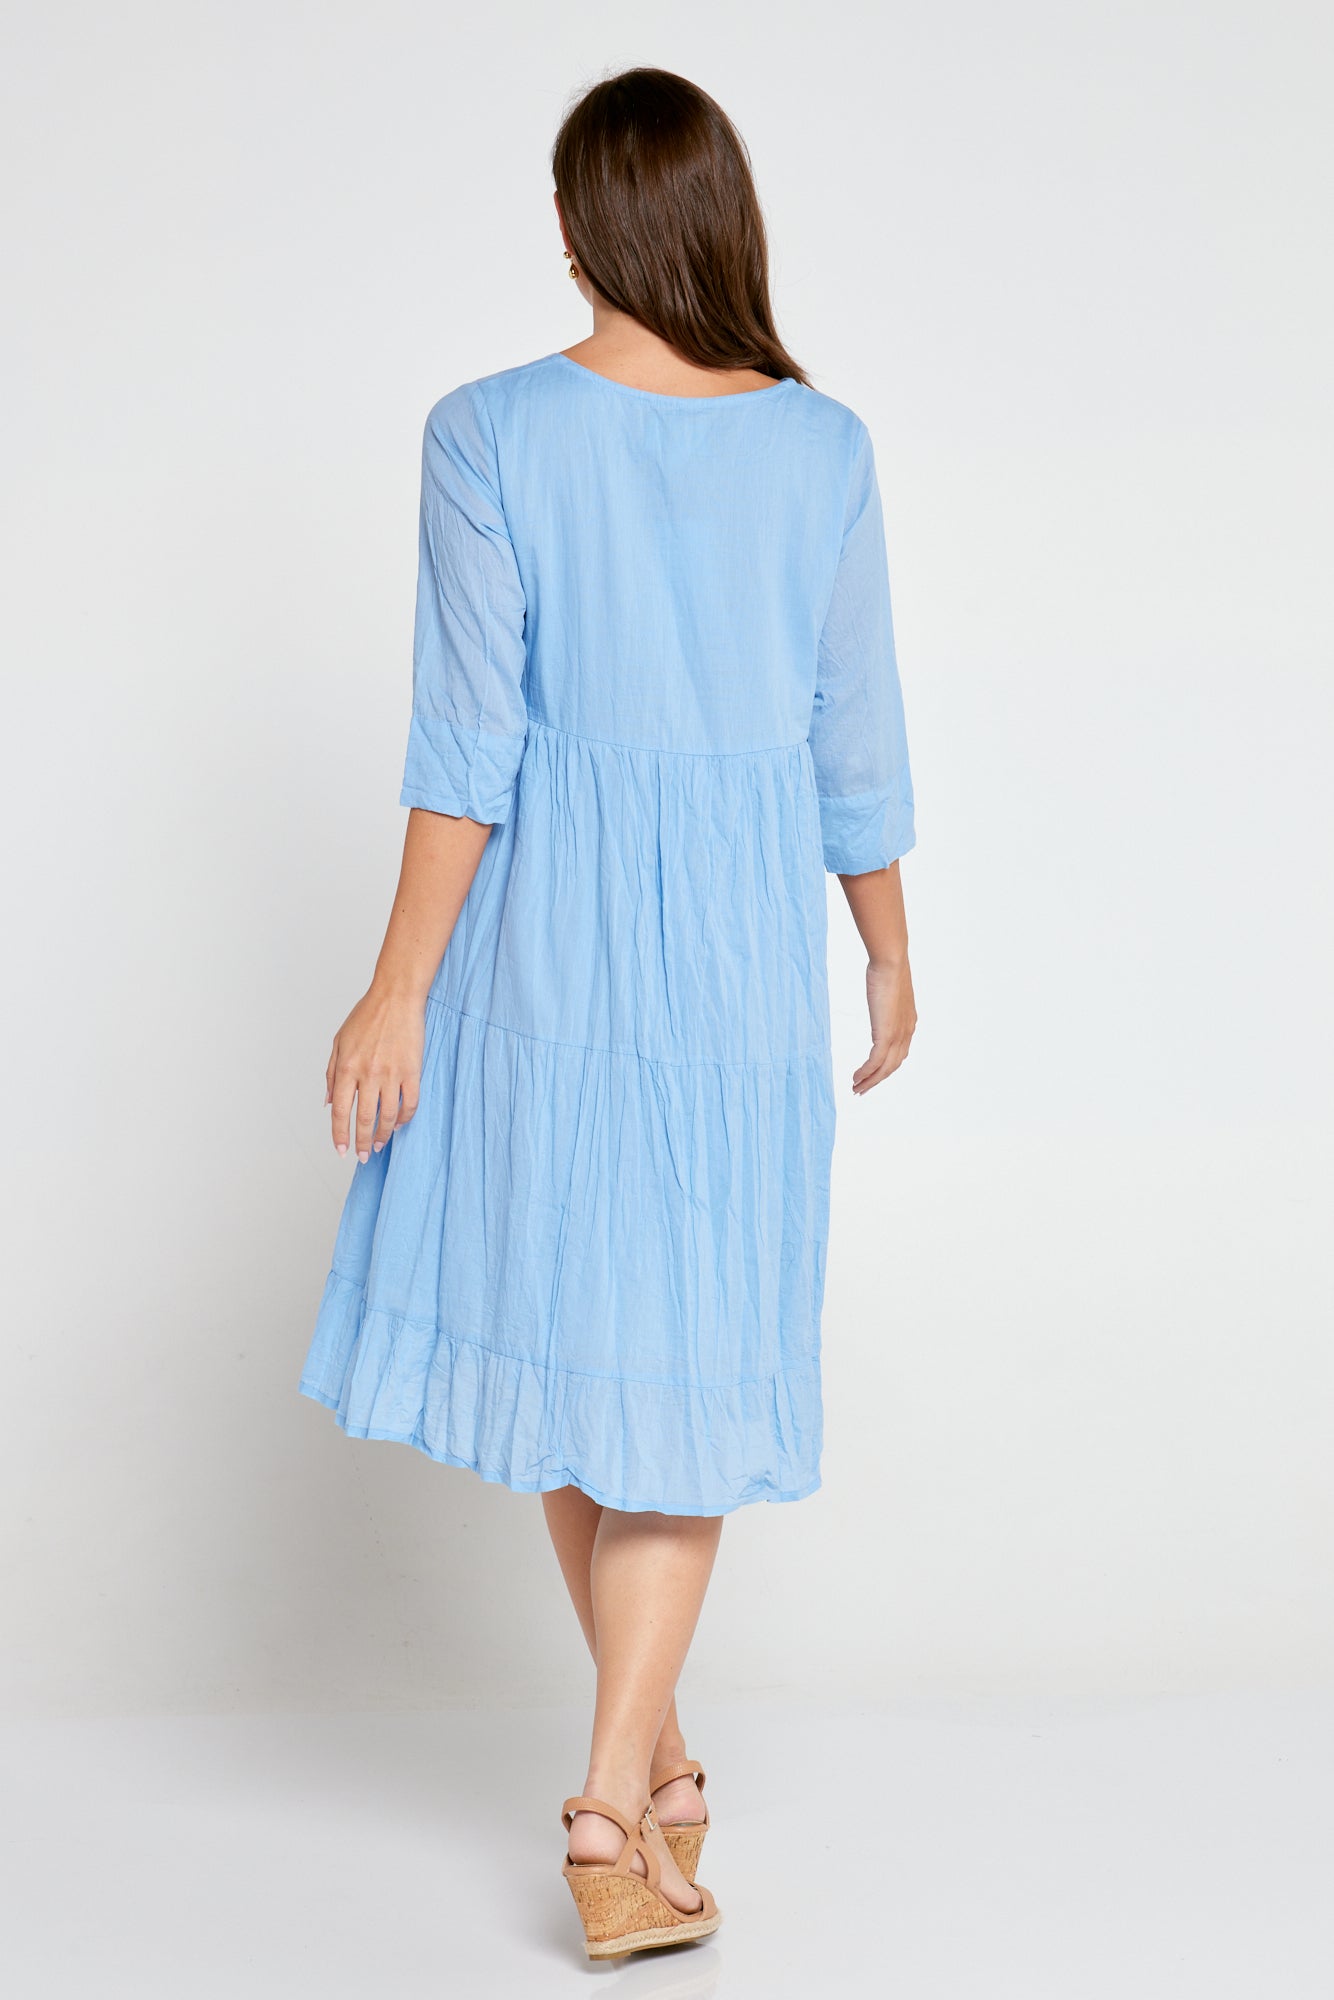 Amber Cotton Dress - Chambray